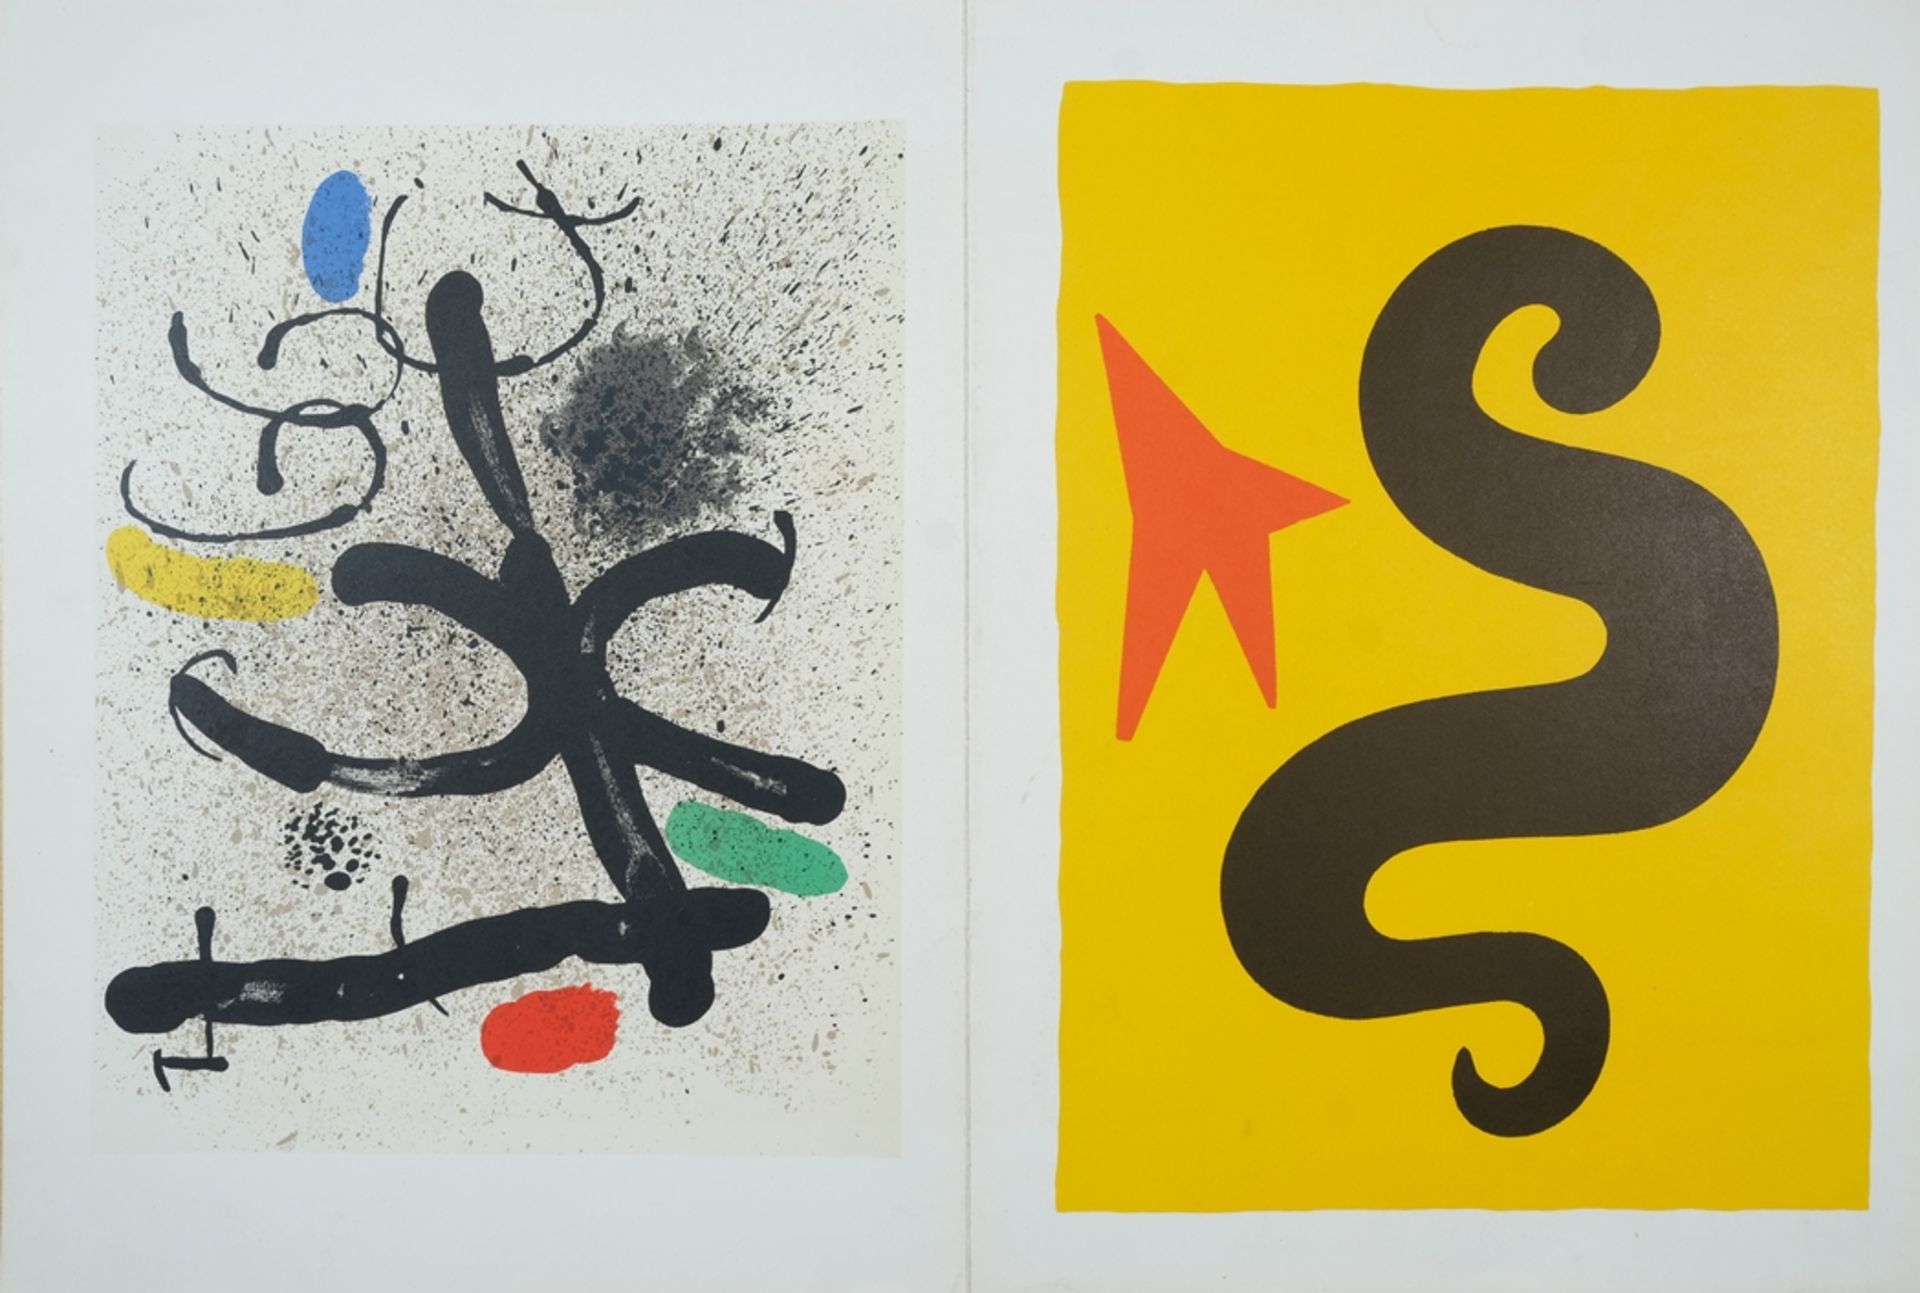 Miró, Joan (1893-1983), "Derrière le Miroir", two lithographs on cardboard. "Derrière le Miroir" (D